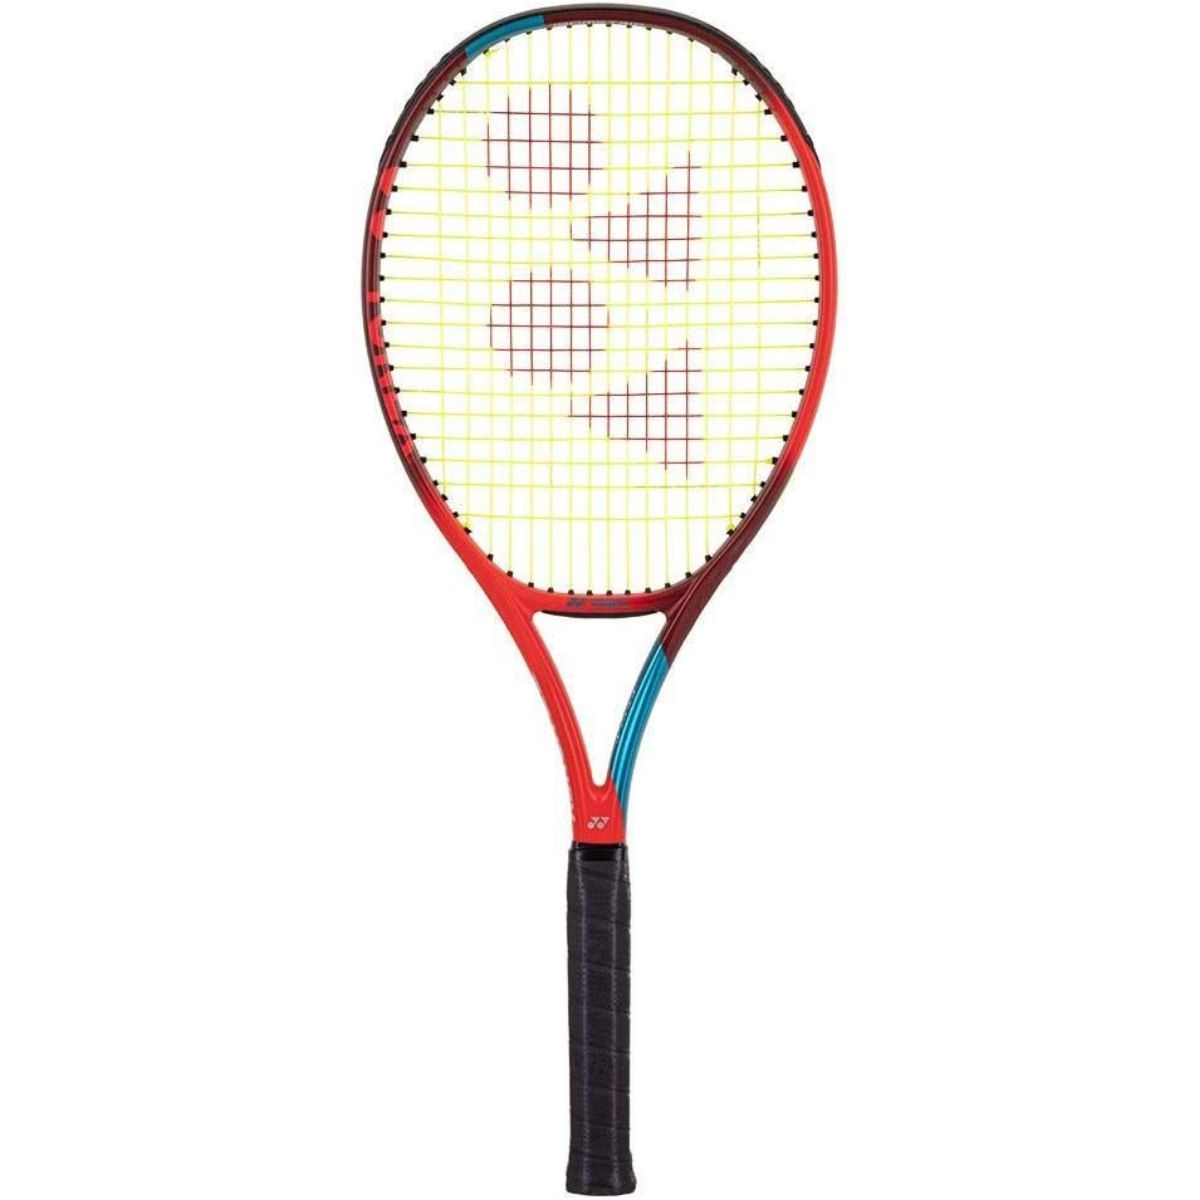 Yonex VCORE 98 tennis racket review